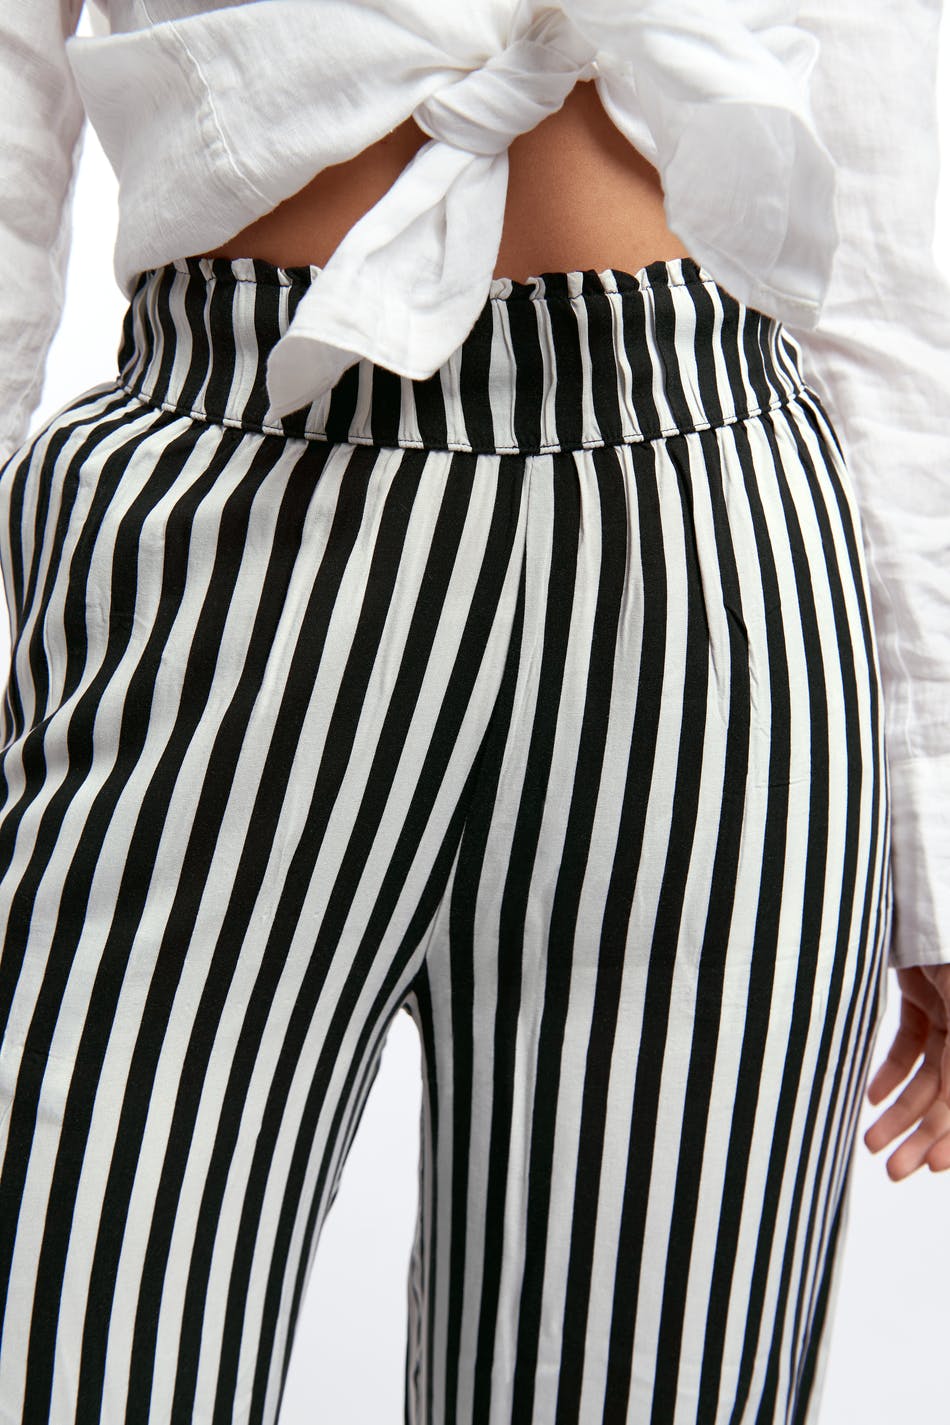 Mode Pantalons Culottes Gina Tricot Culotte motif ray\u00e9 style d\u00e9contract\u00e9 